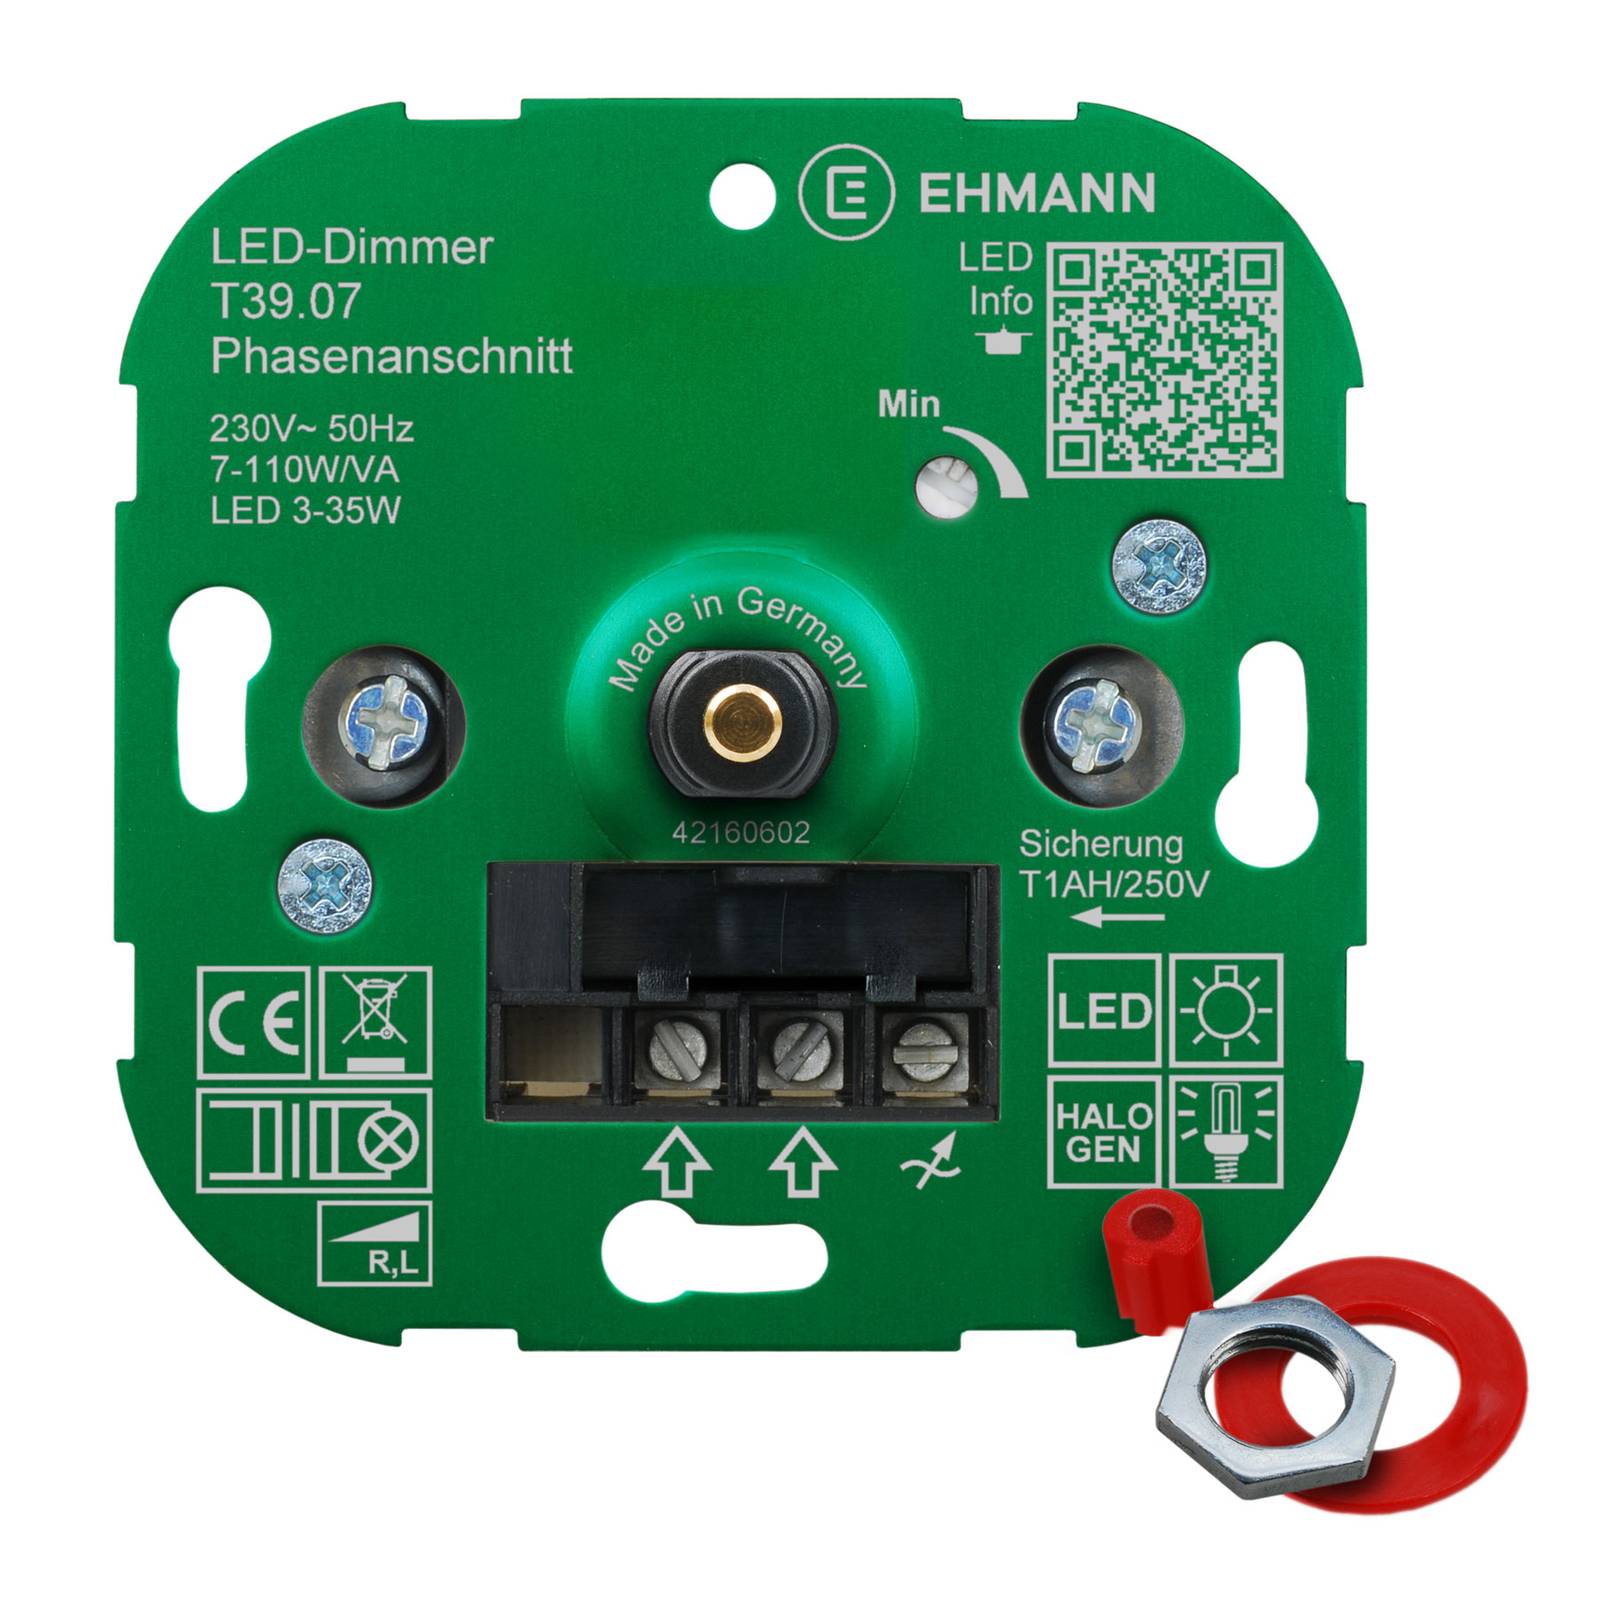 EHMANN T39 LED-Dimmer Phasenanschnitt, 3-35W